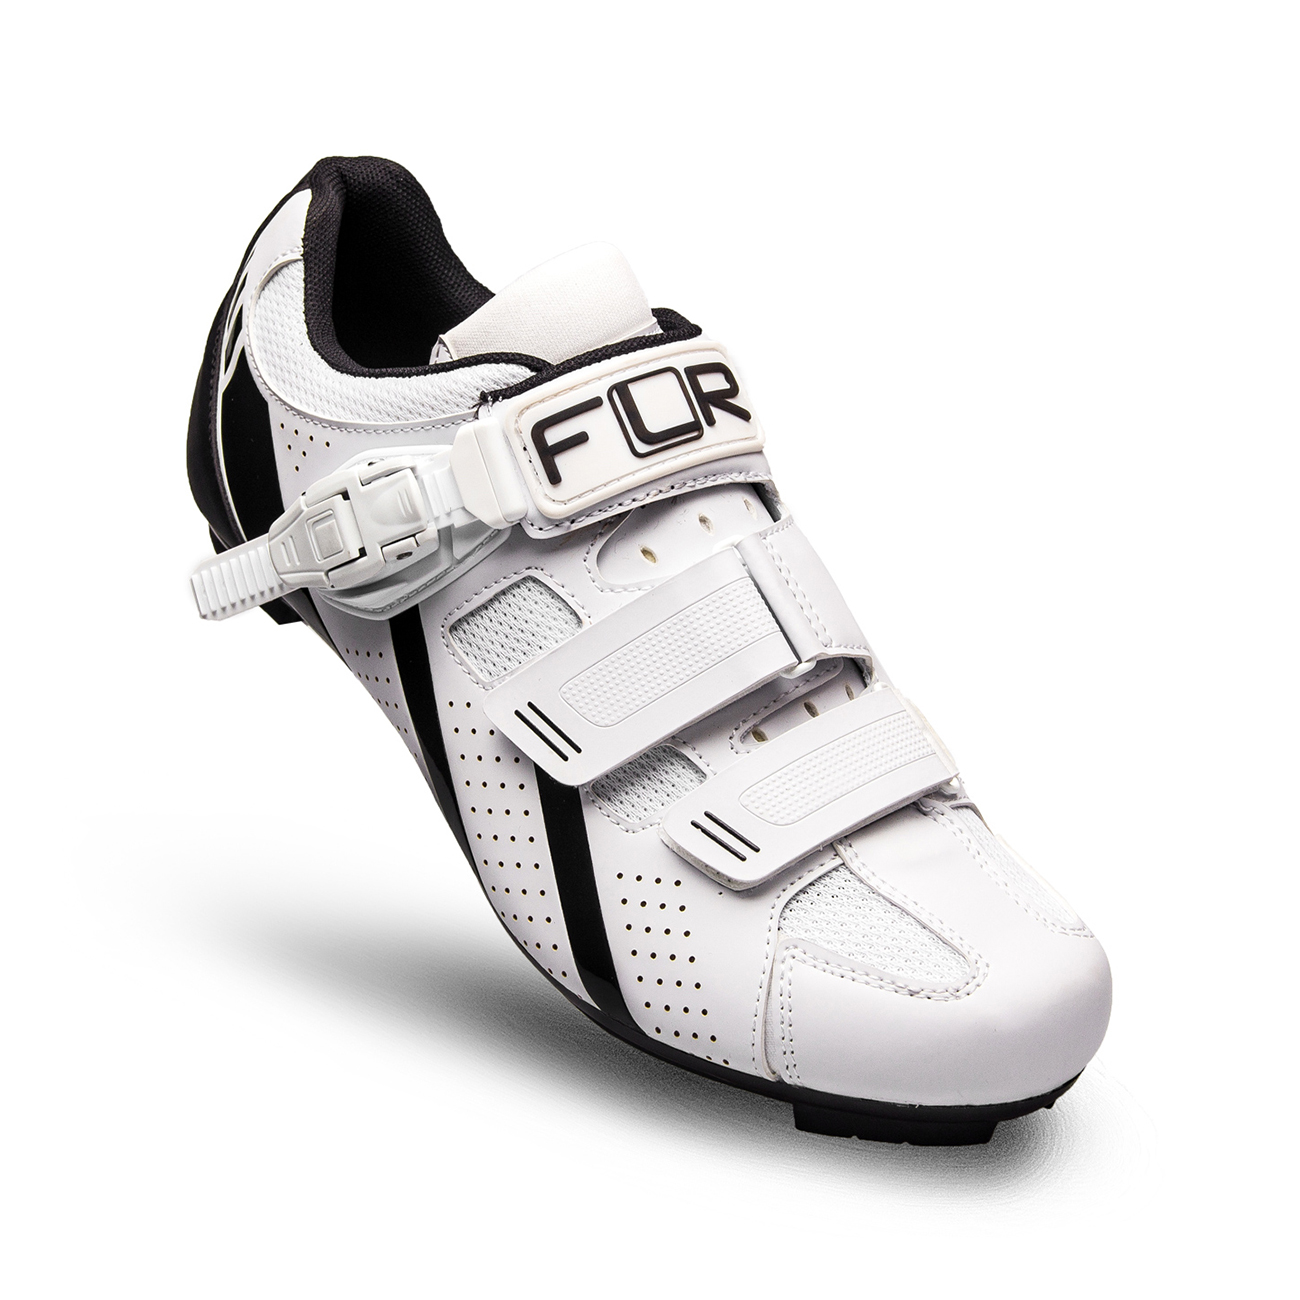 
                FLR Cyklistické tretry - F15 - černá/bílá 41
            